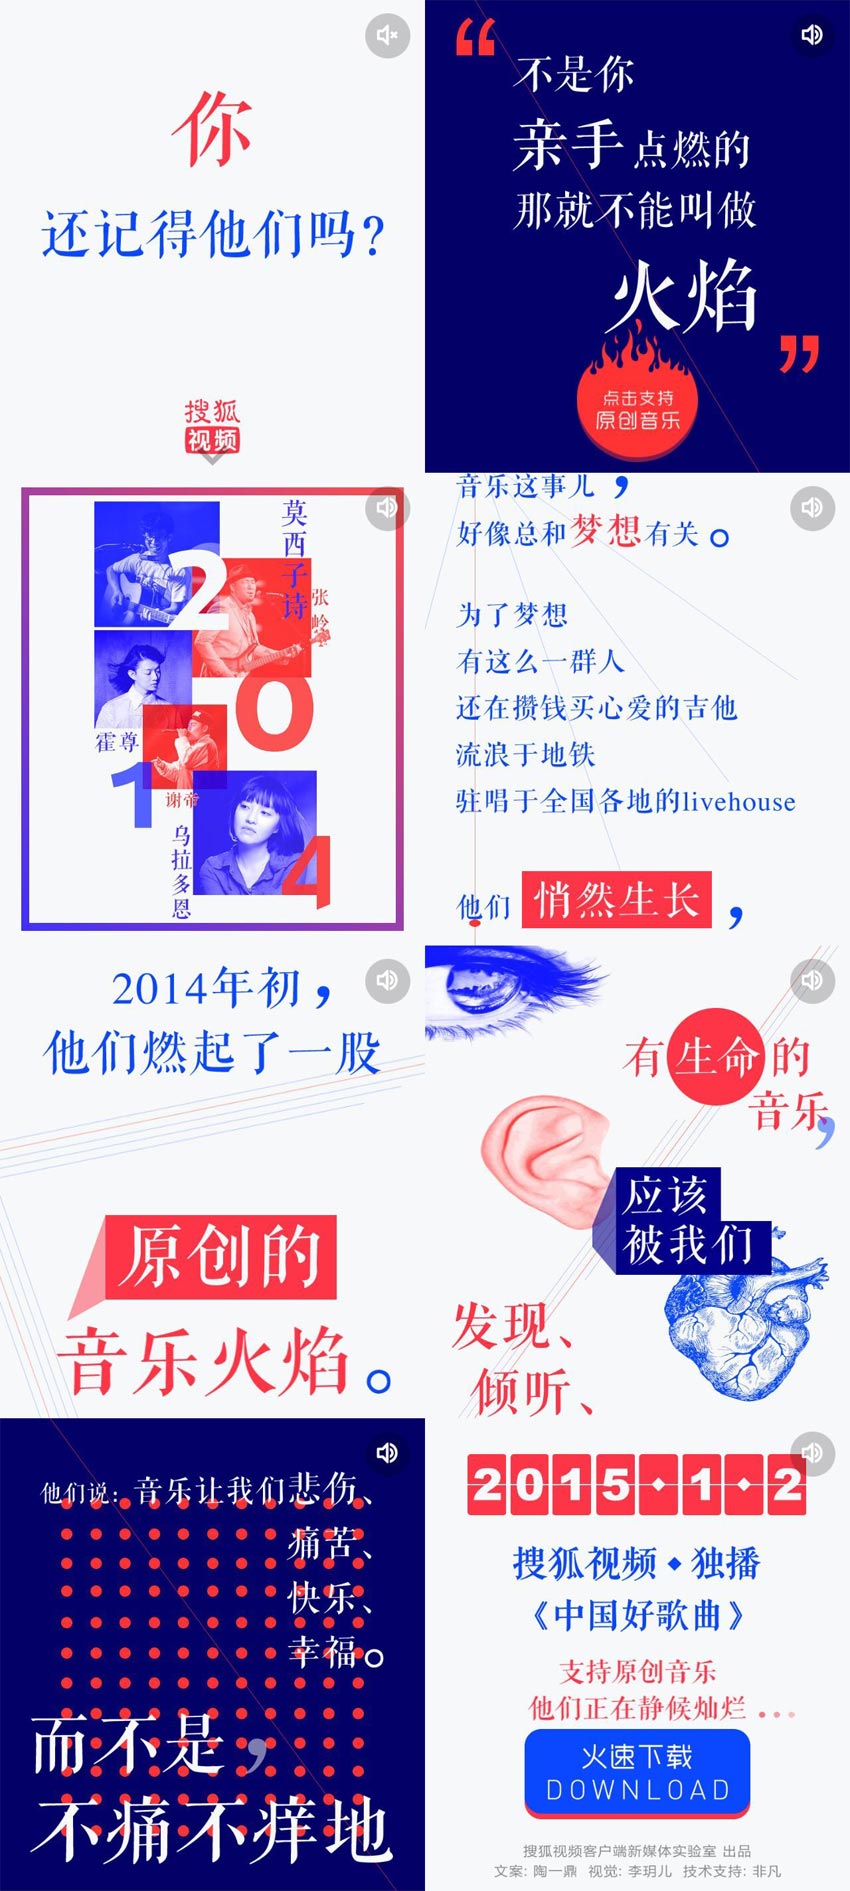 搜狐音乐手机专题动画页面模板下载html